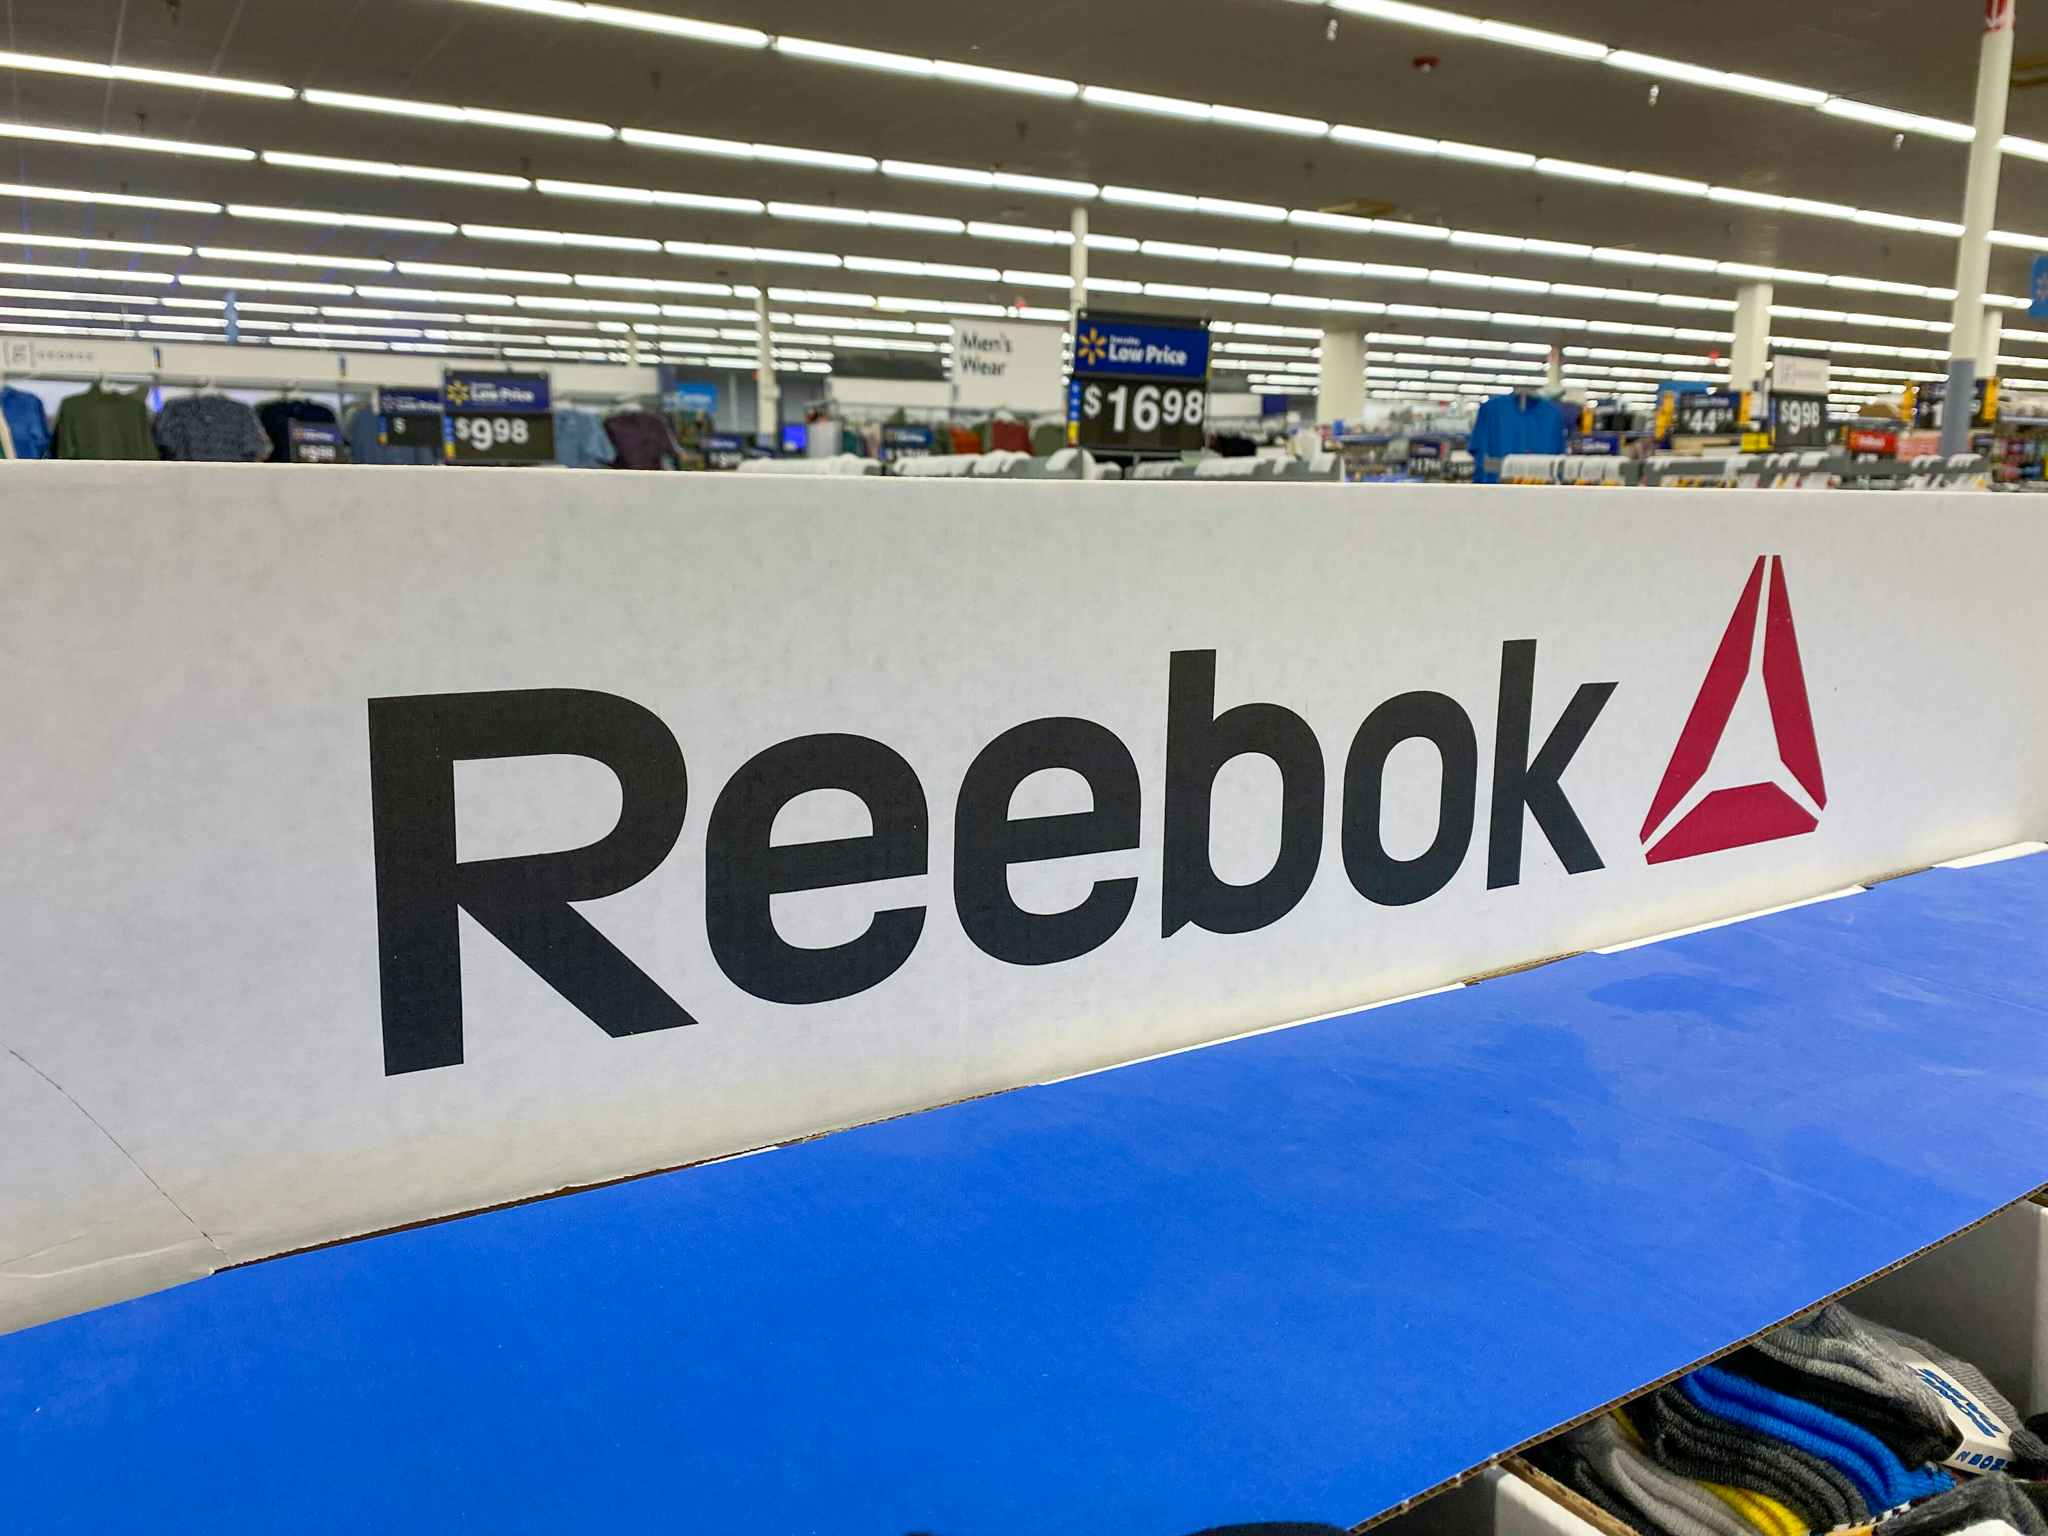 Huge Reebok Sale at Walmart: $9 Shirts, $12 Jackets, and More